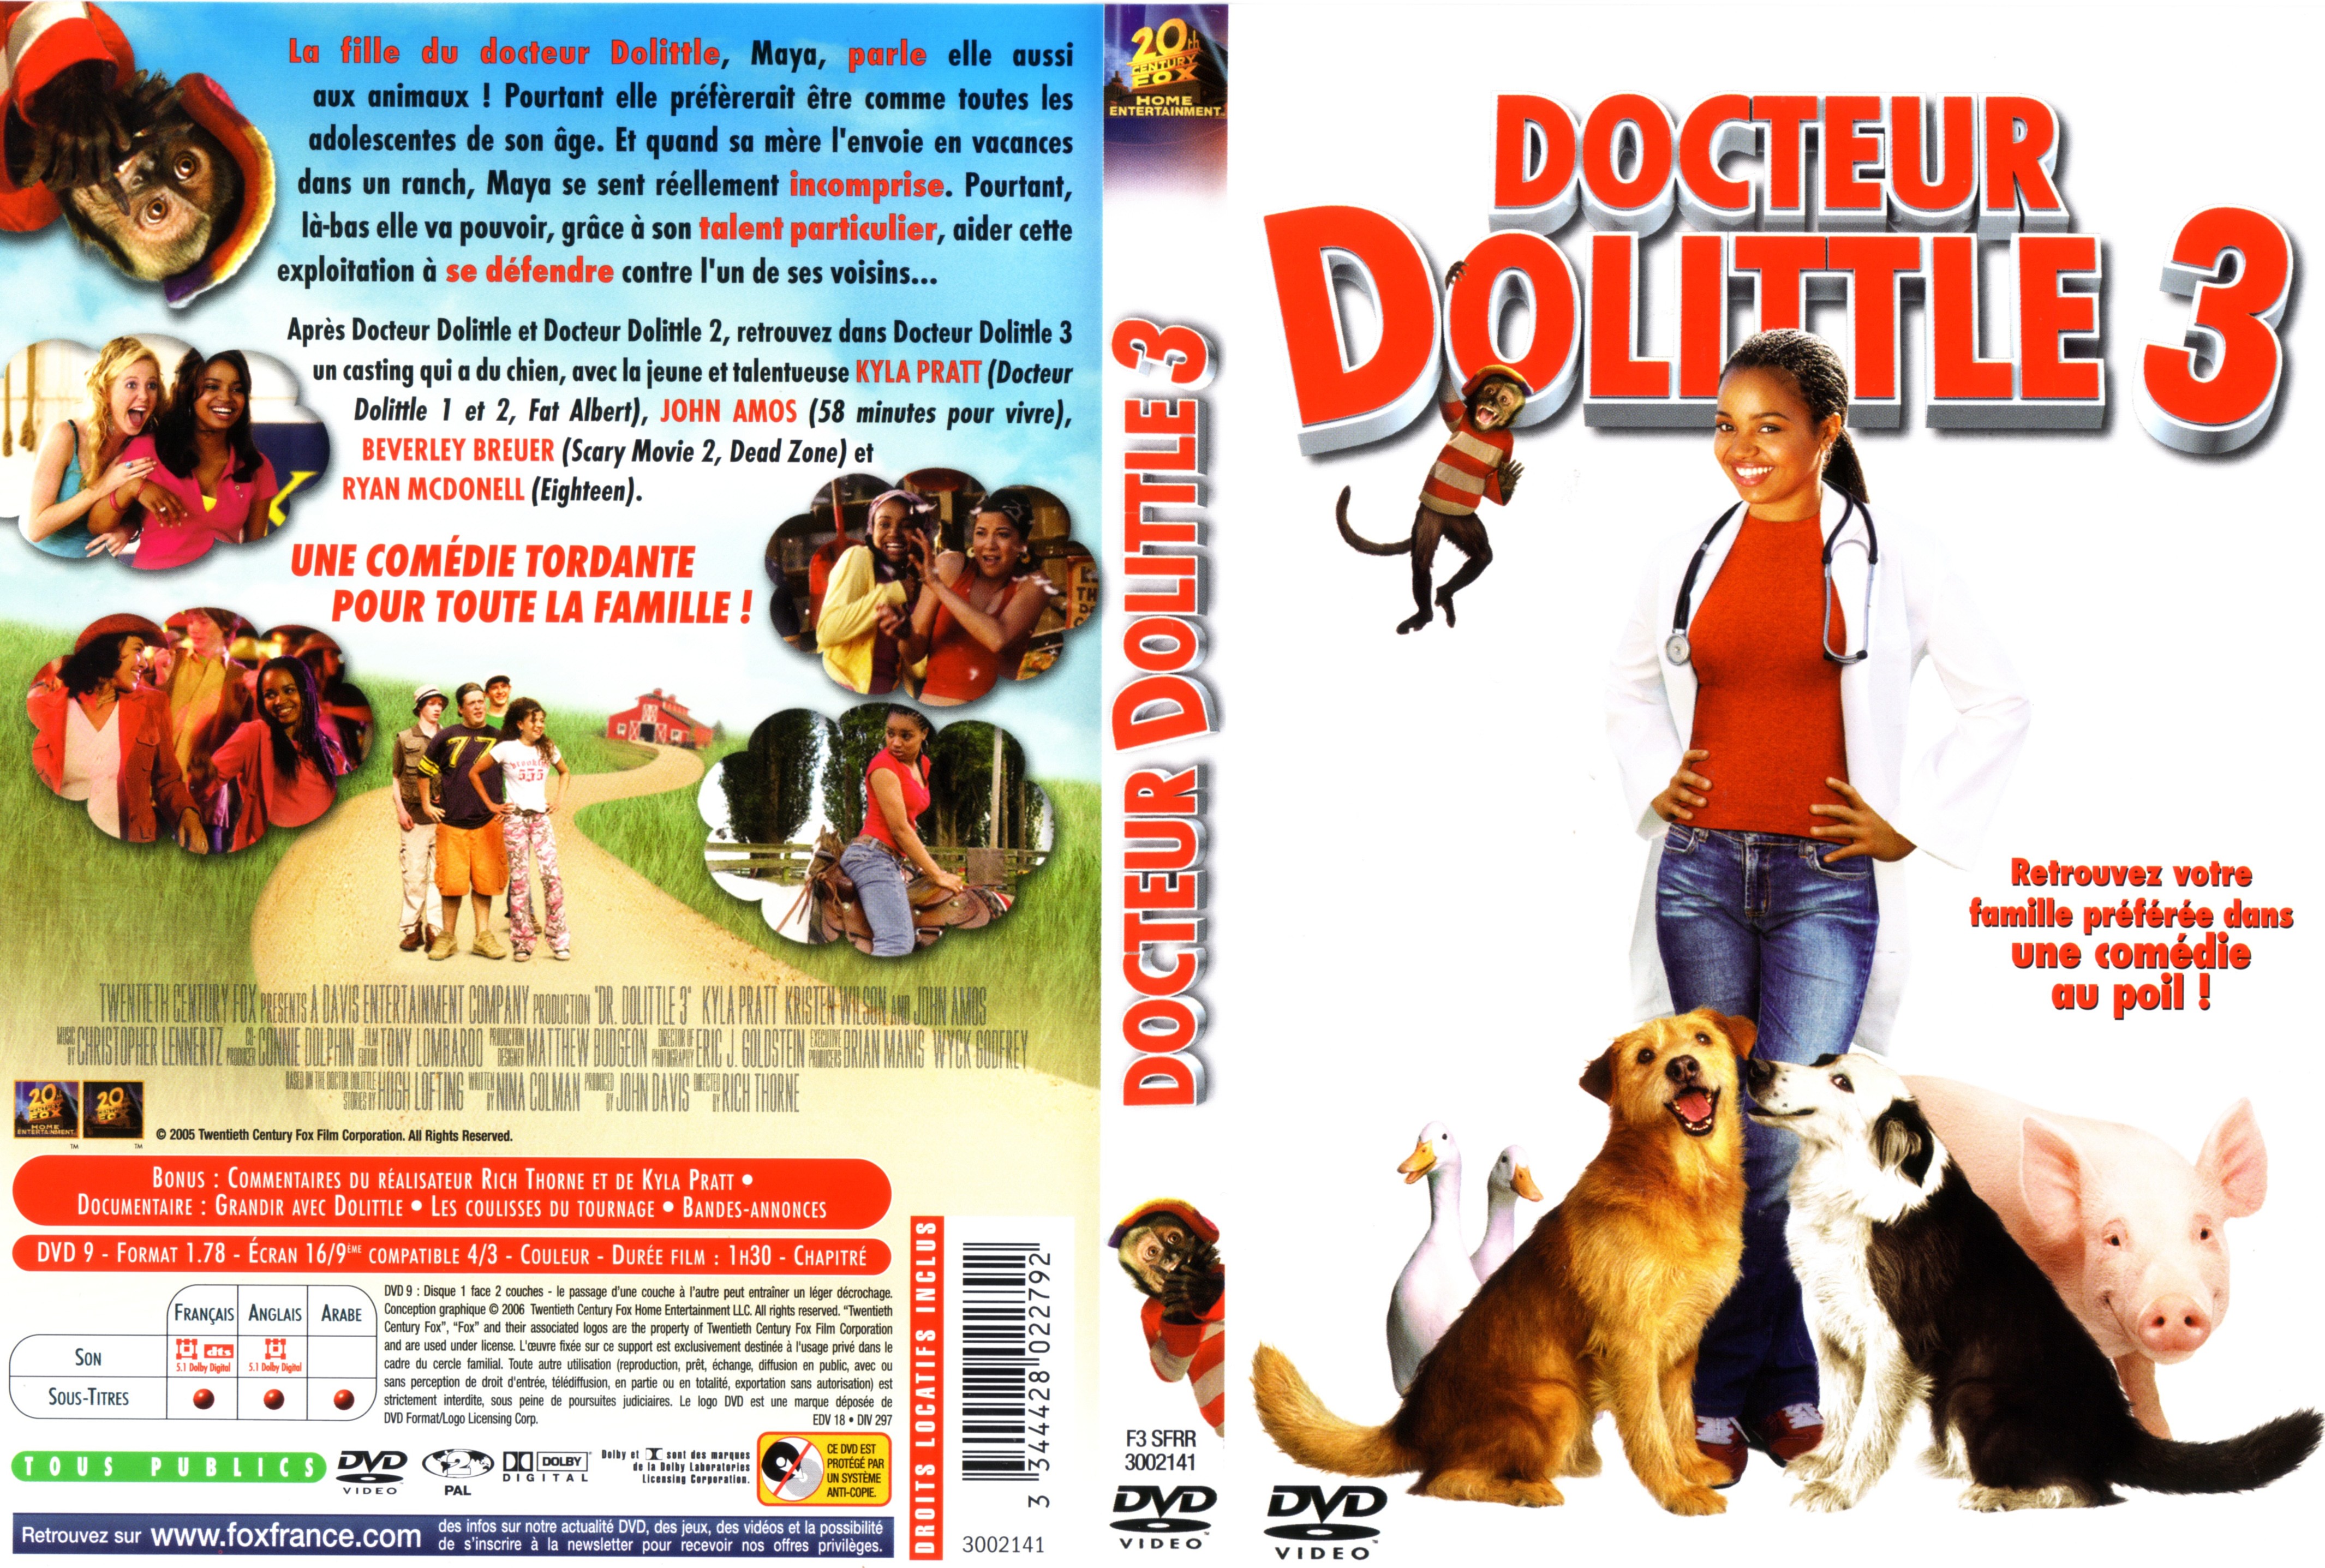 Jaquette DVD Docteur Dolittle 3